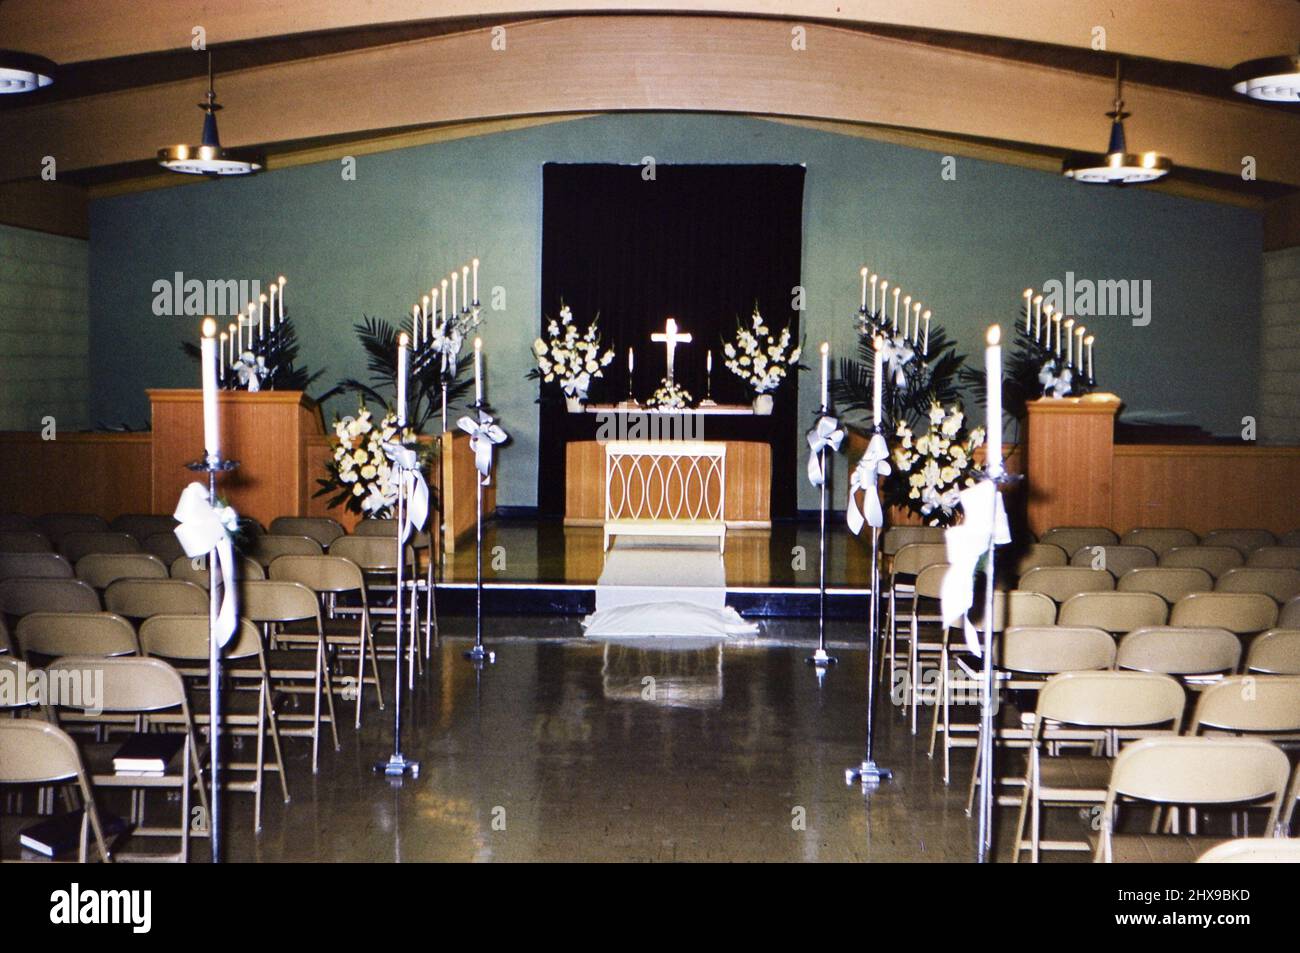 Eine Kapelle oder Kirchenheiligtum für ein besonderes Ereignis mit vielen angezündeten Kerzen geschmückt, wahrscheinlich für eine Hochzeit oder eine besondere religiöse Zeremonie Ca. 1961 Stockfoto